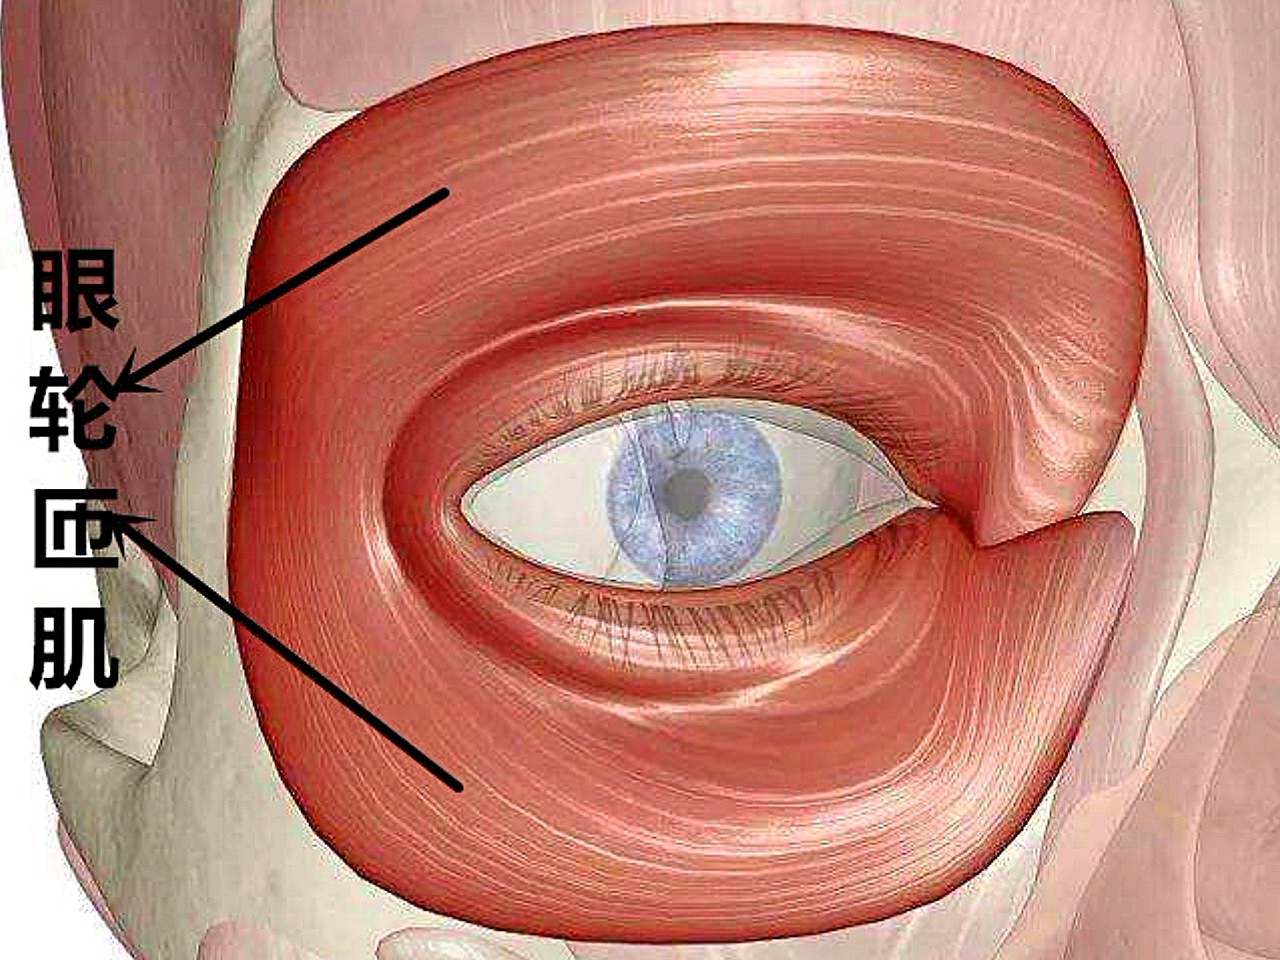 眼轮匝肌是面部表情肌肉之一,呈环状分布位于皮下组织与睑板之间,围绕